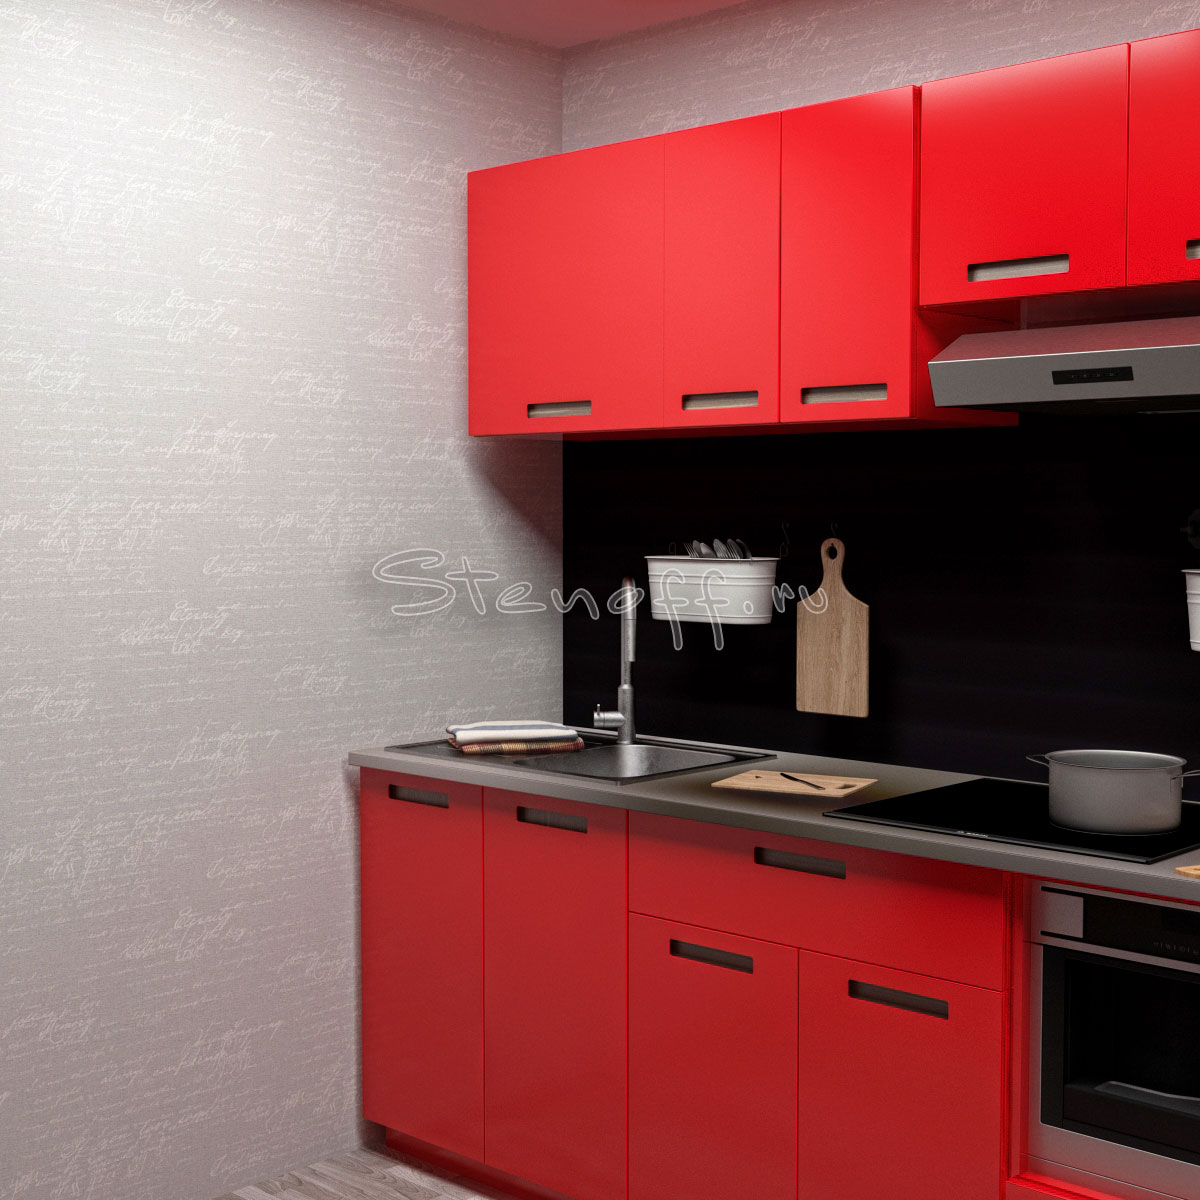 449556 red kitchen